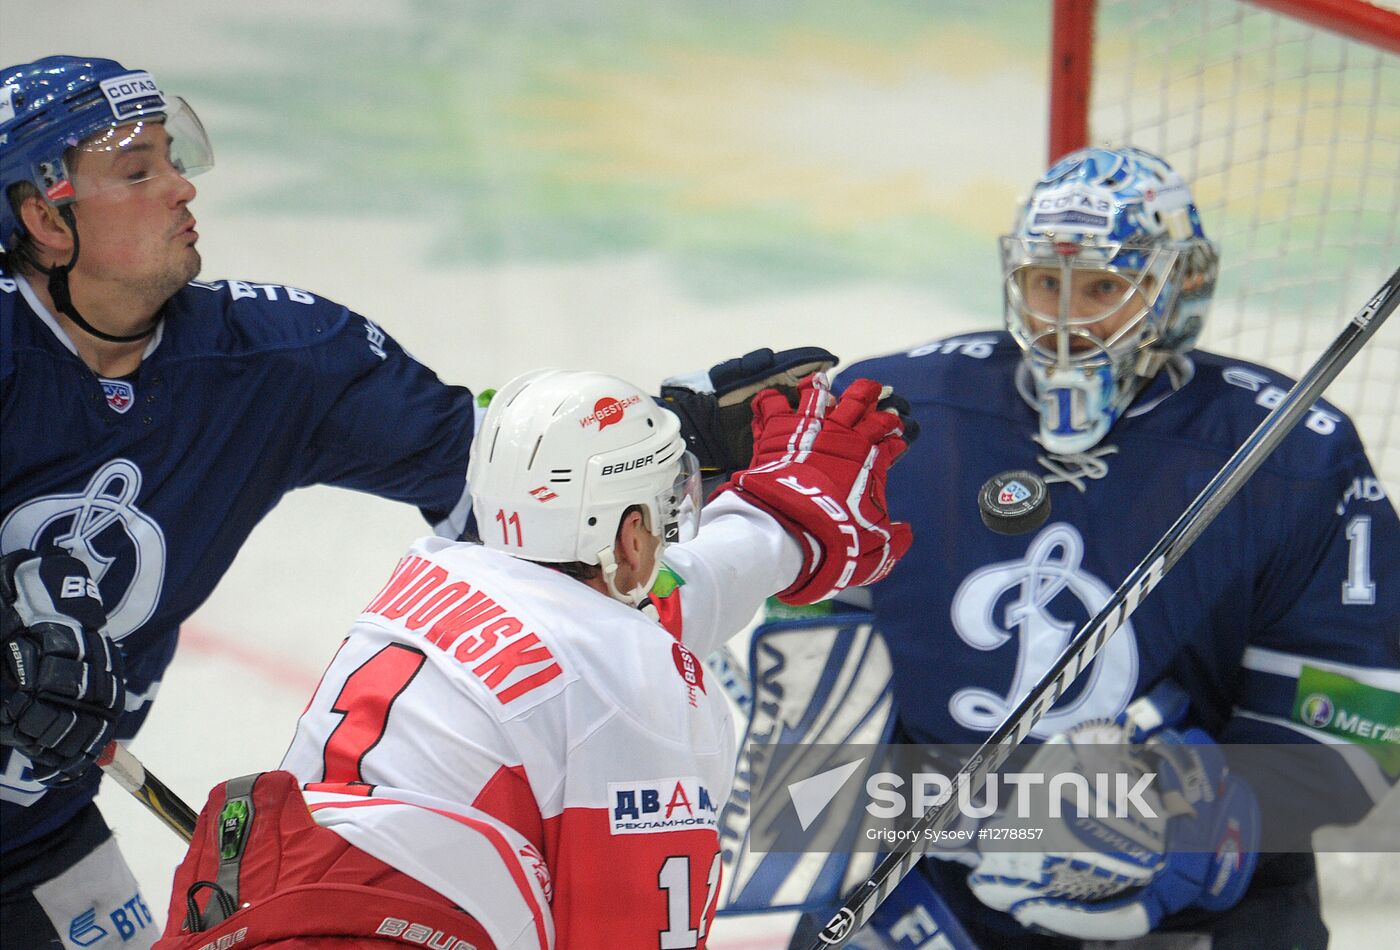 Hockey KHL. Dynamo Moscow vs. Spartak Moscow